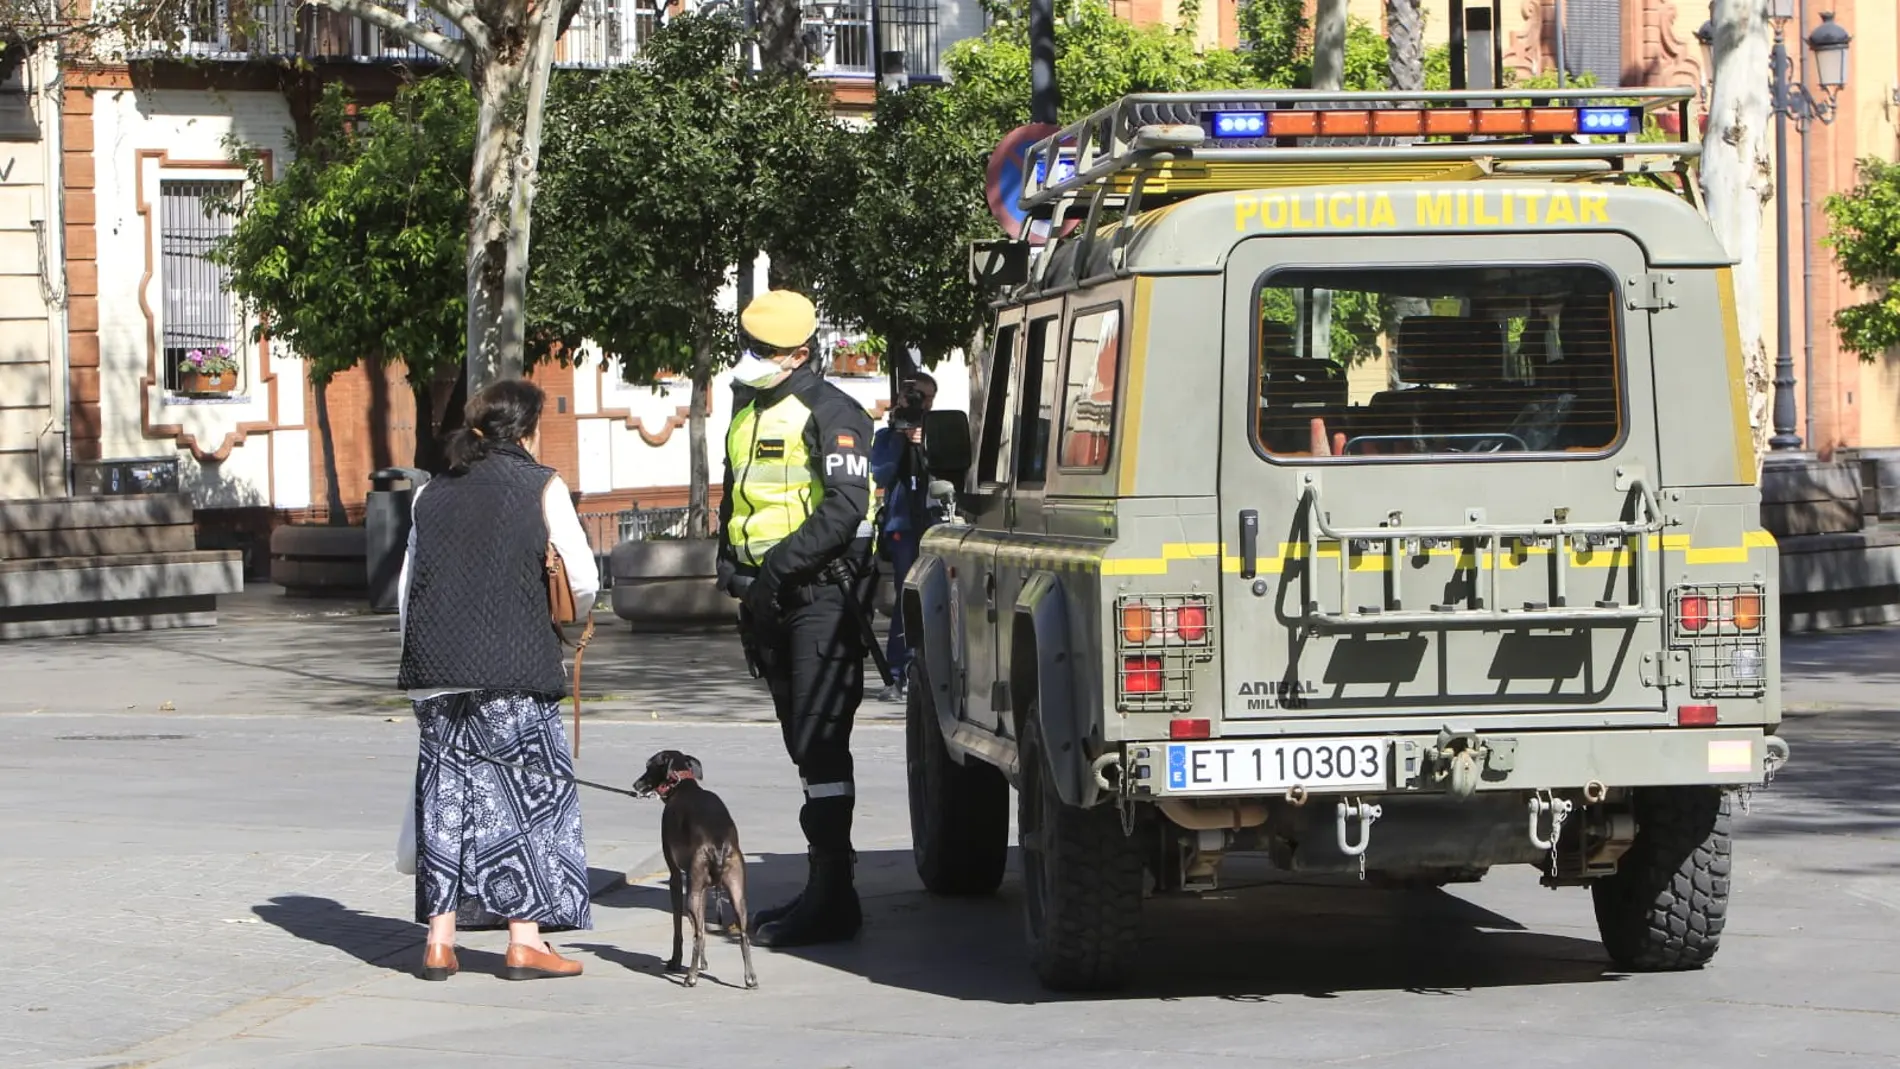 Militares dan instrucciones a los viandantes en el centro de Sevilla